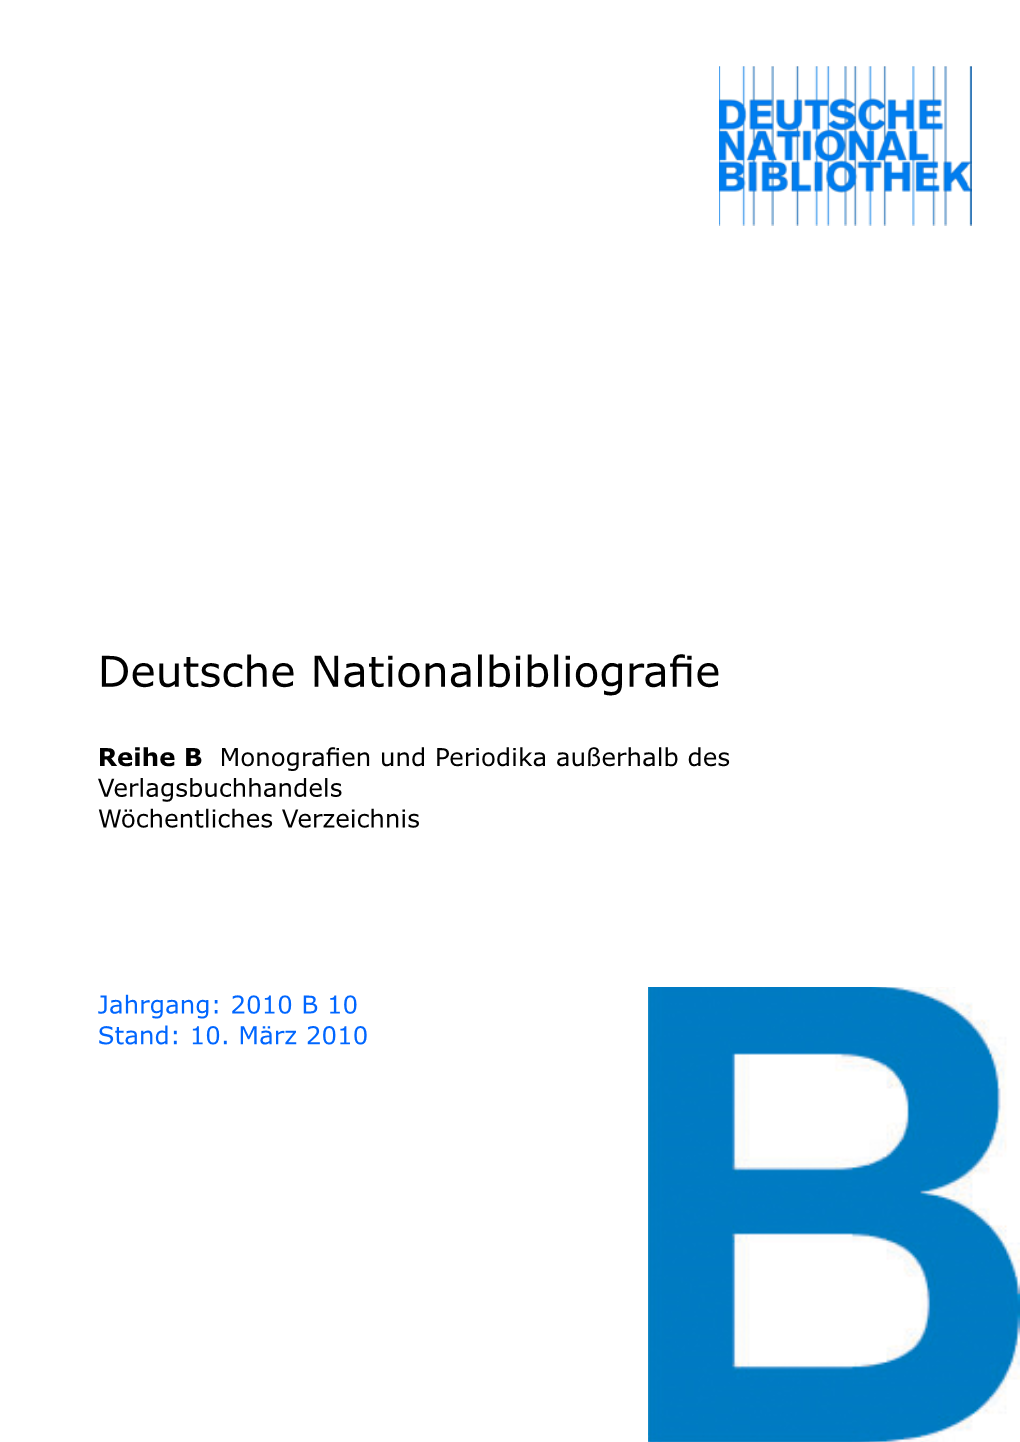 Deutsche Nationalbibliografie 2010 B 10